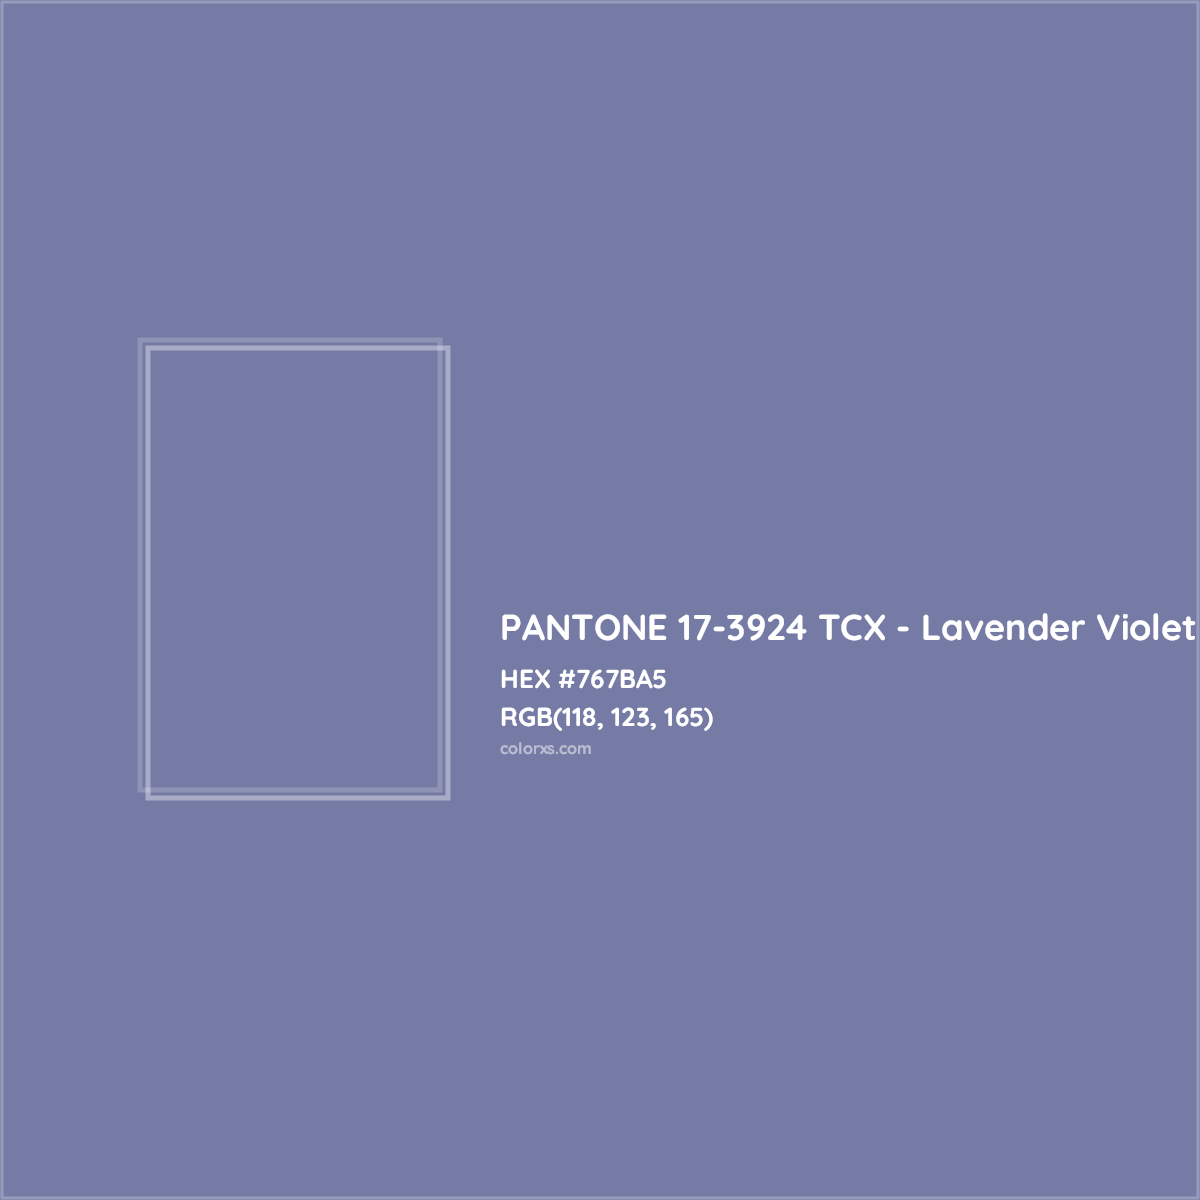 HEX #767BA5 PANTONE 17-3924 TCX - Lavender Violet CMS Pantone TCX - Color Code